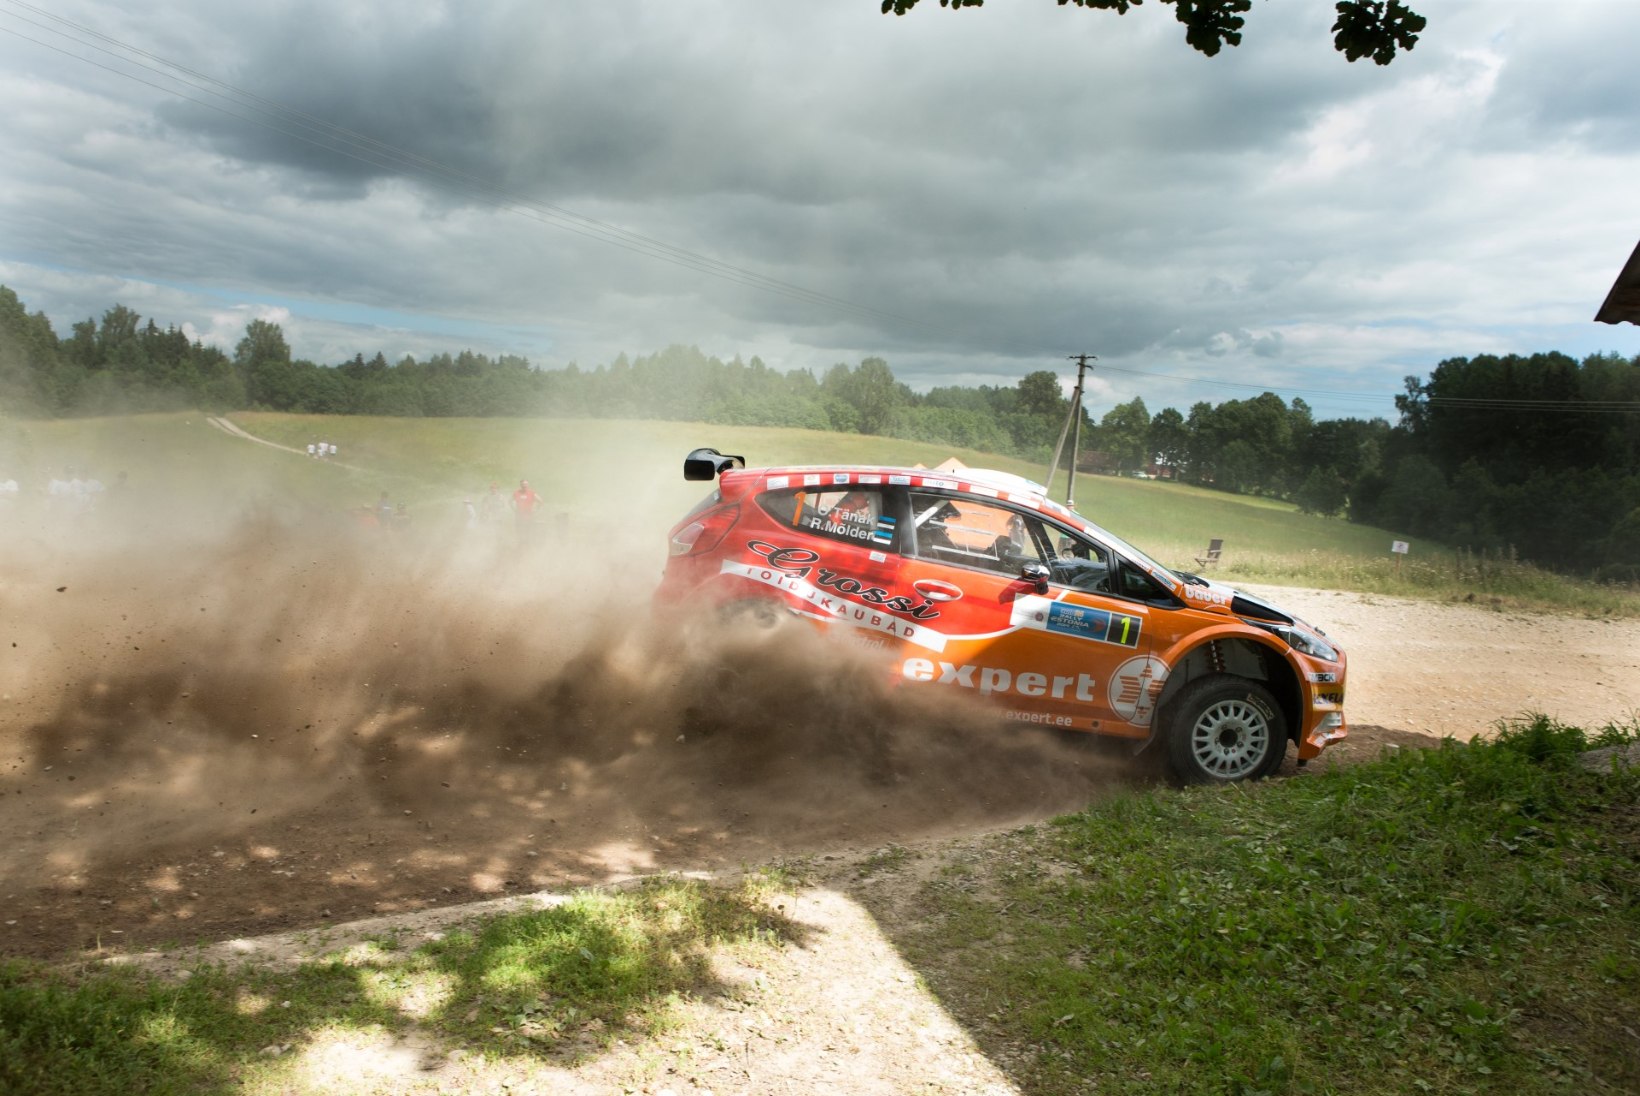 FOTOD: Tänak on võitnud Rally Estonial üheksast kiiruskatsest kaheksa